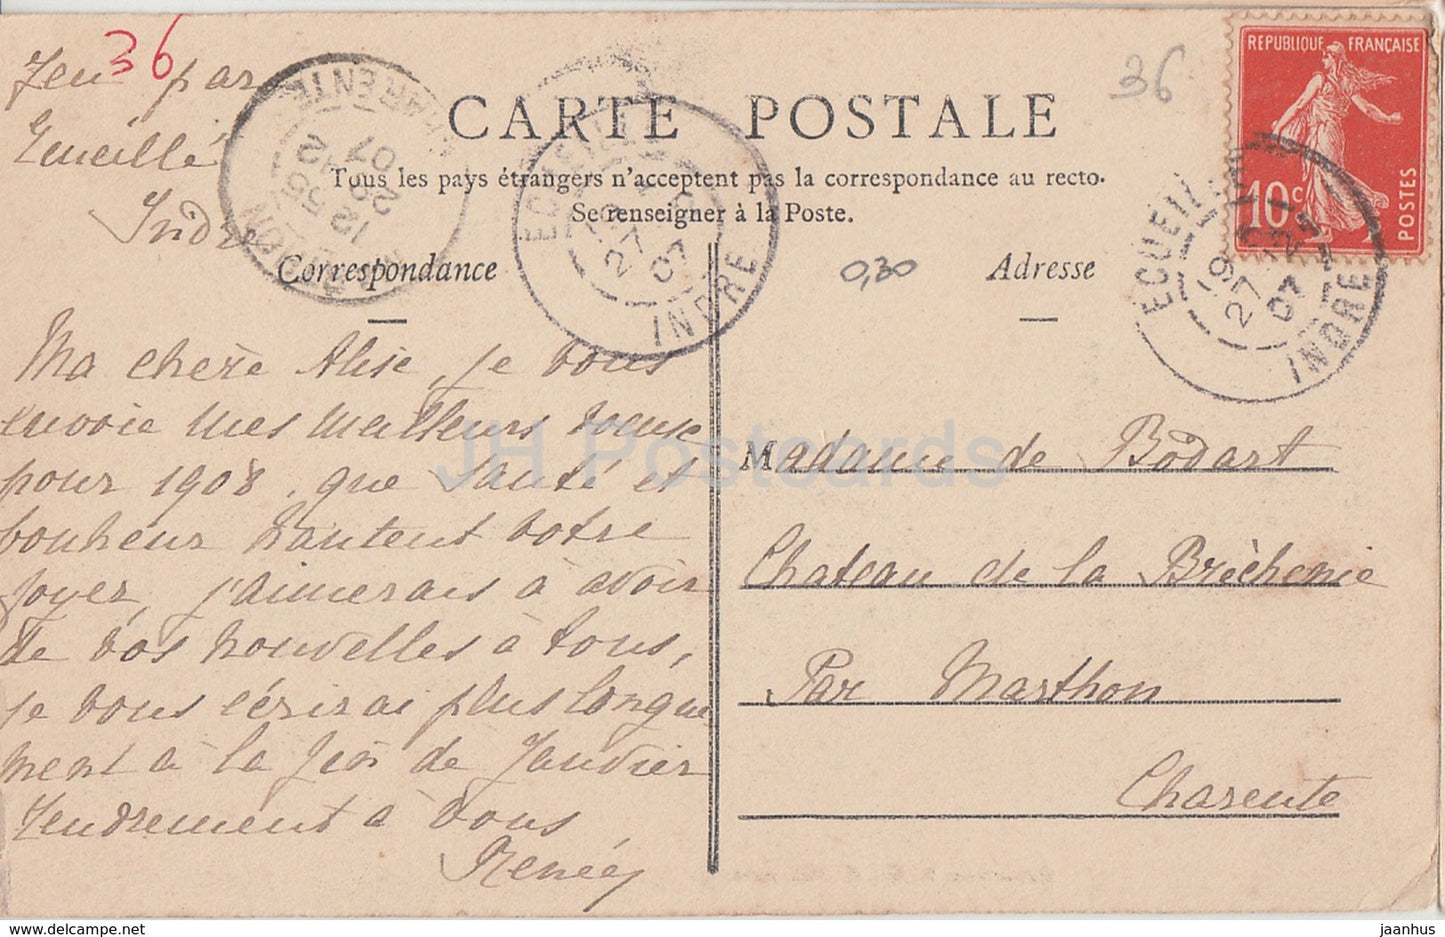 Valencay - Chateau - La Grille d'Honneur - castle - old postcard - 1907 - France - used